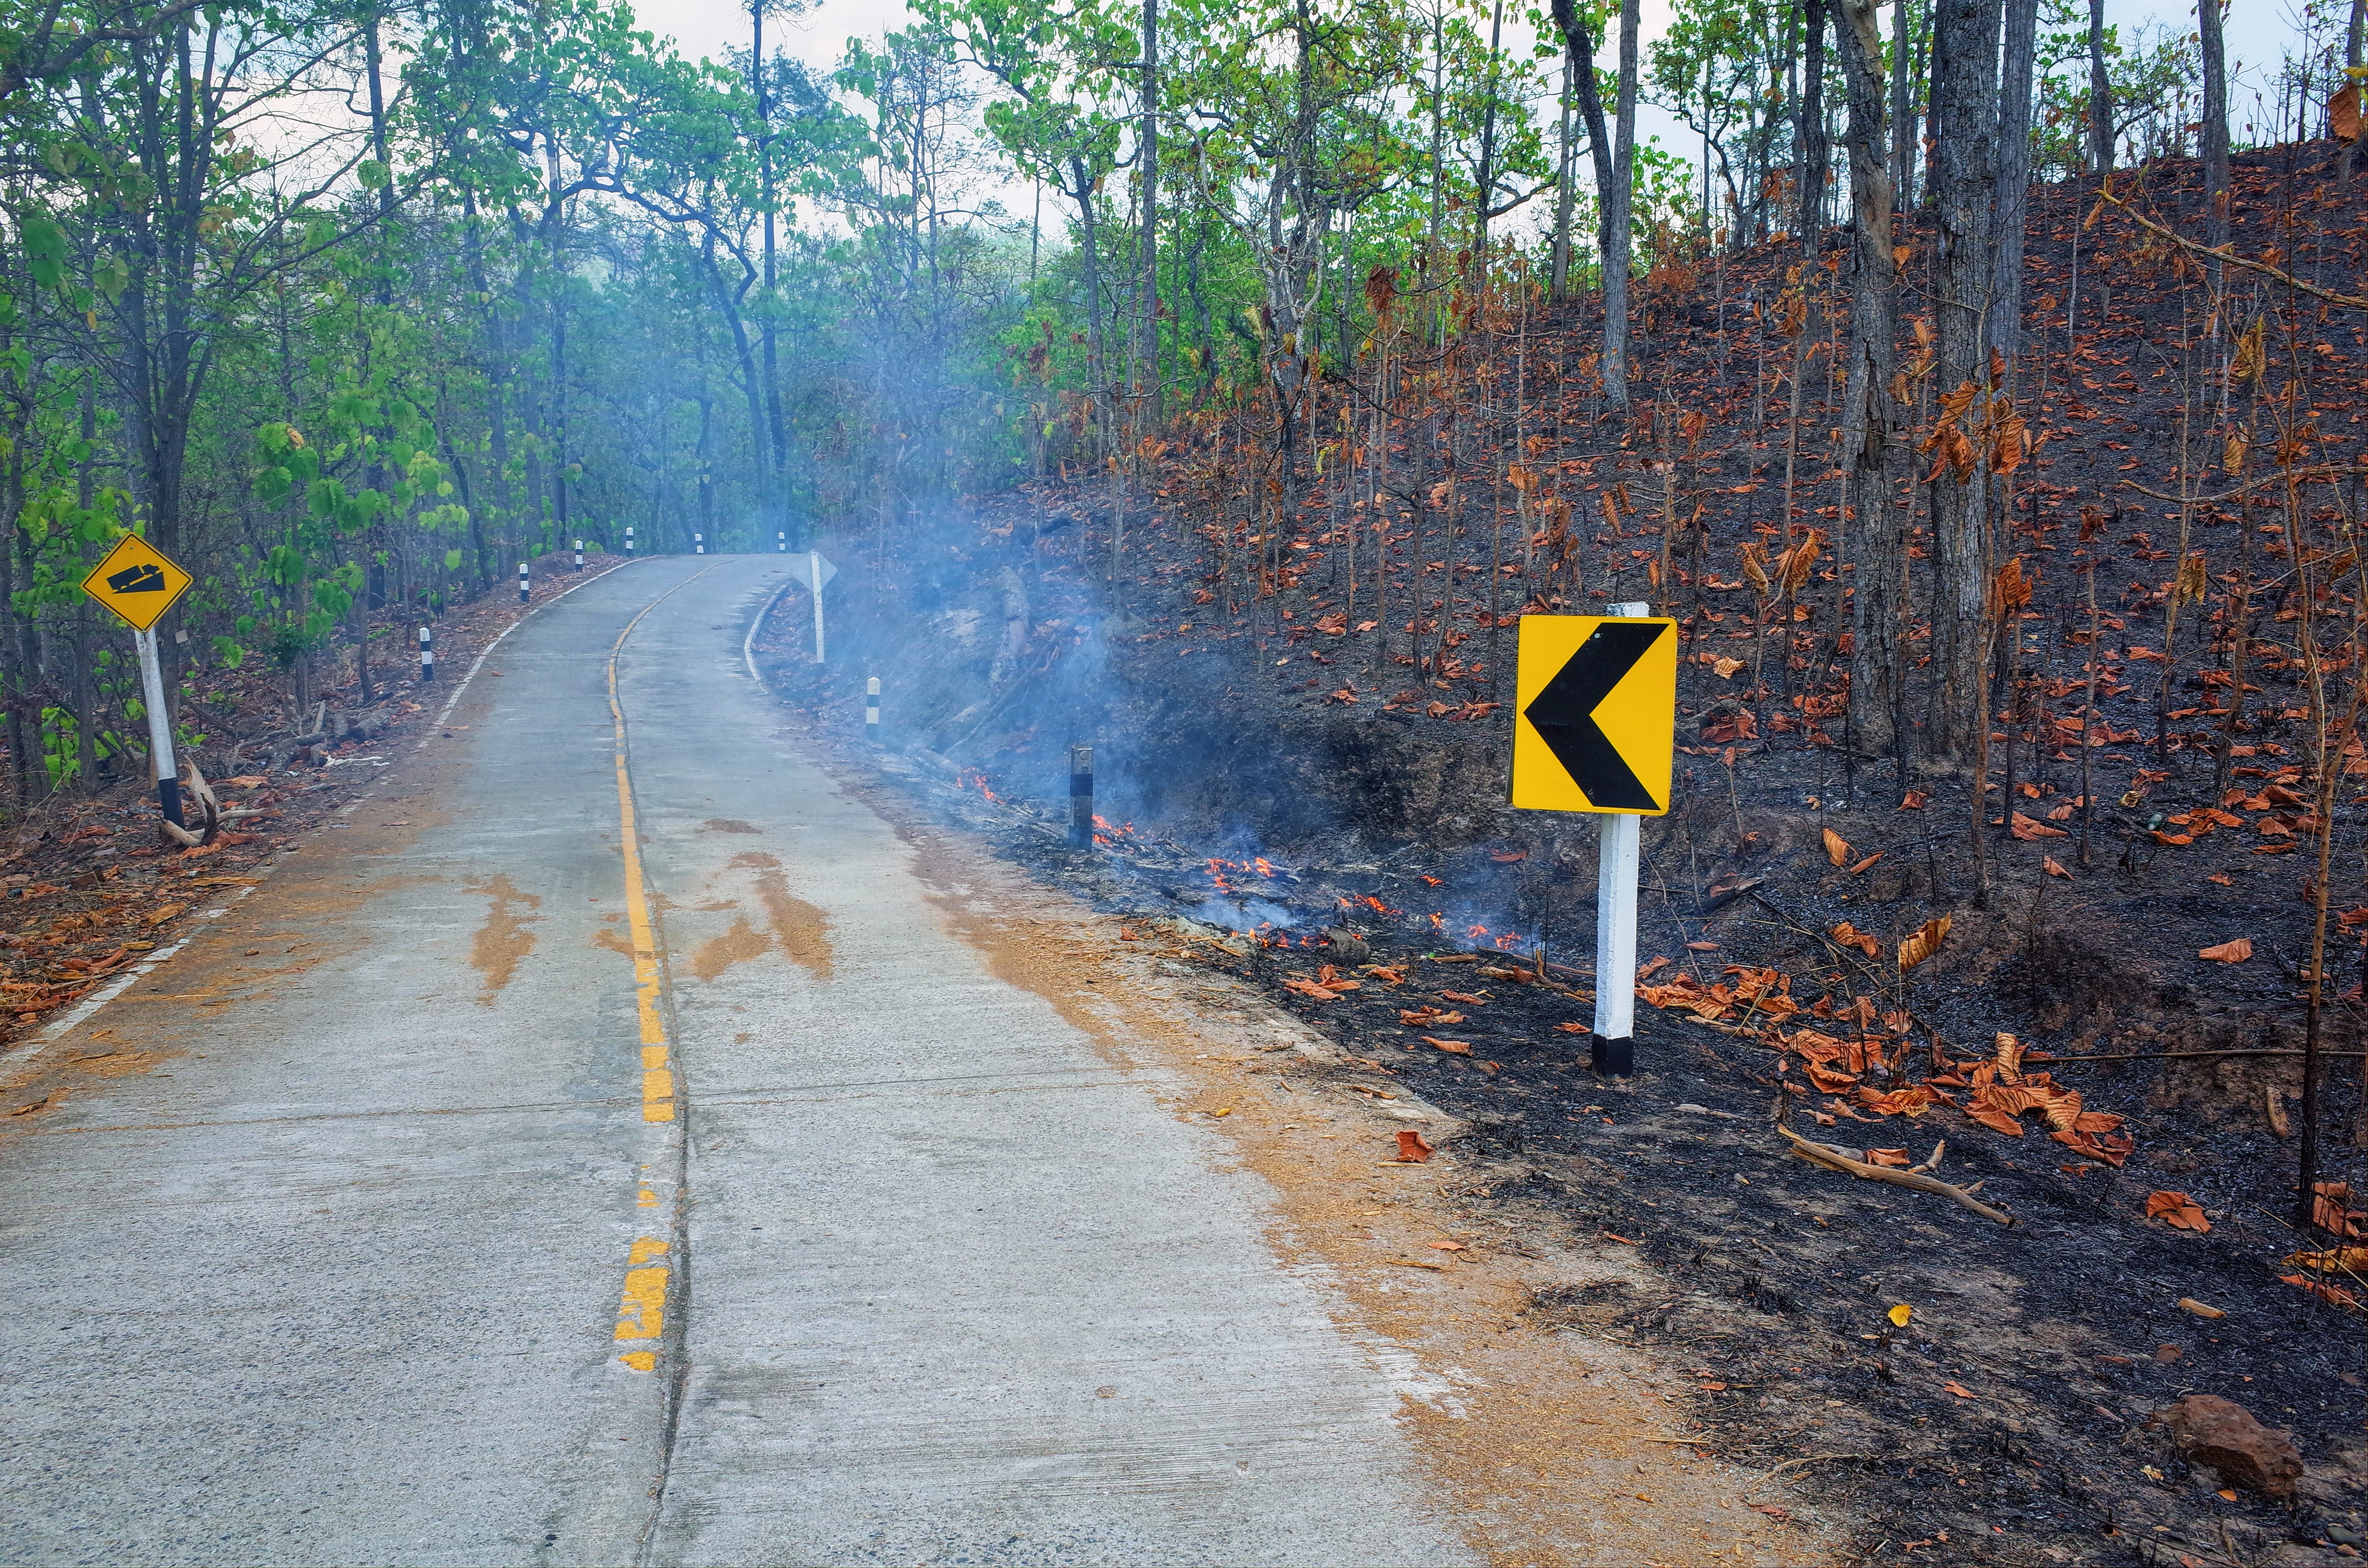 メーホンソンループの道路の写真。山焼きの影響で、道路のすぐそばまで燃えています。